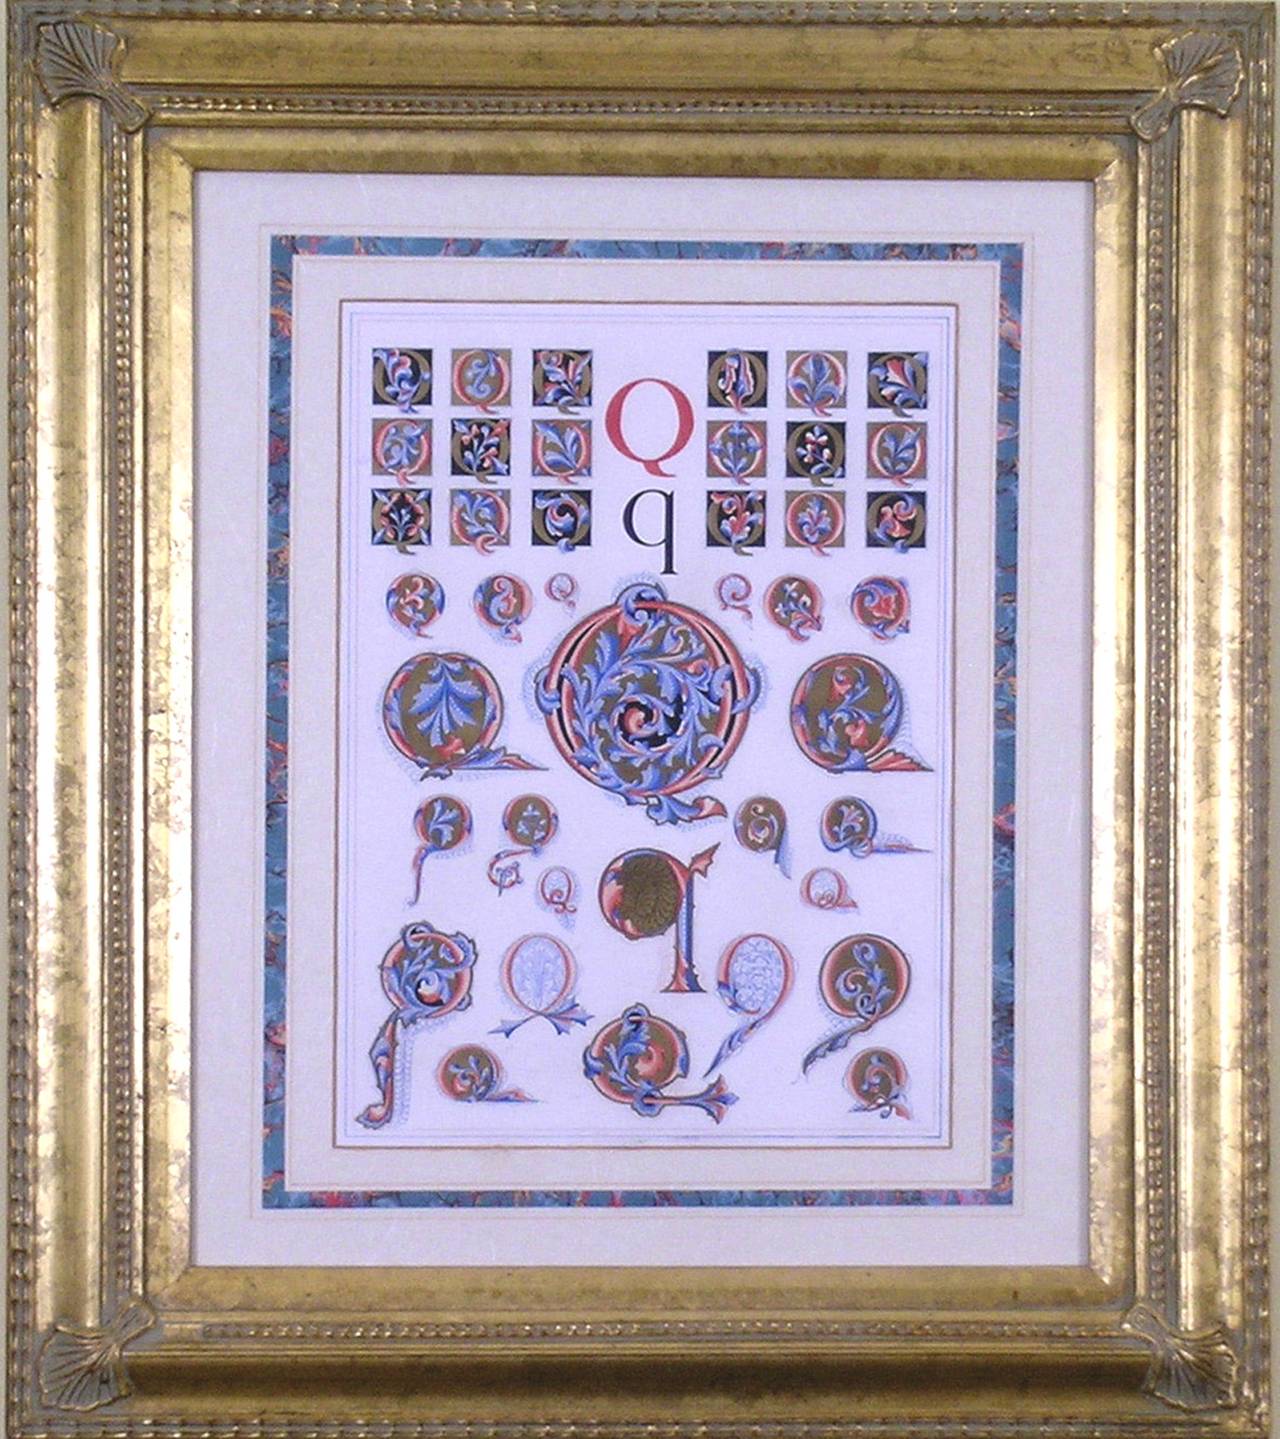 Initial Letters "Q" (Alphabet) - Print by Owen Jones